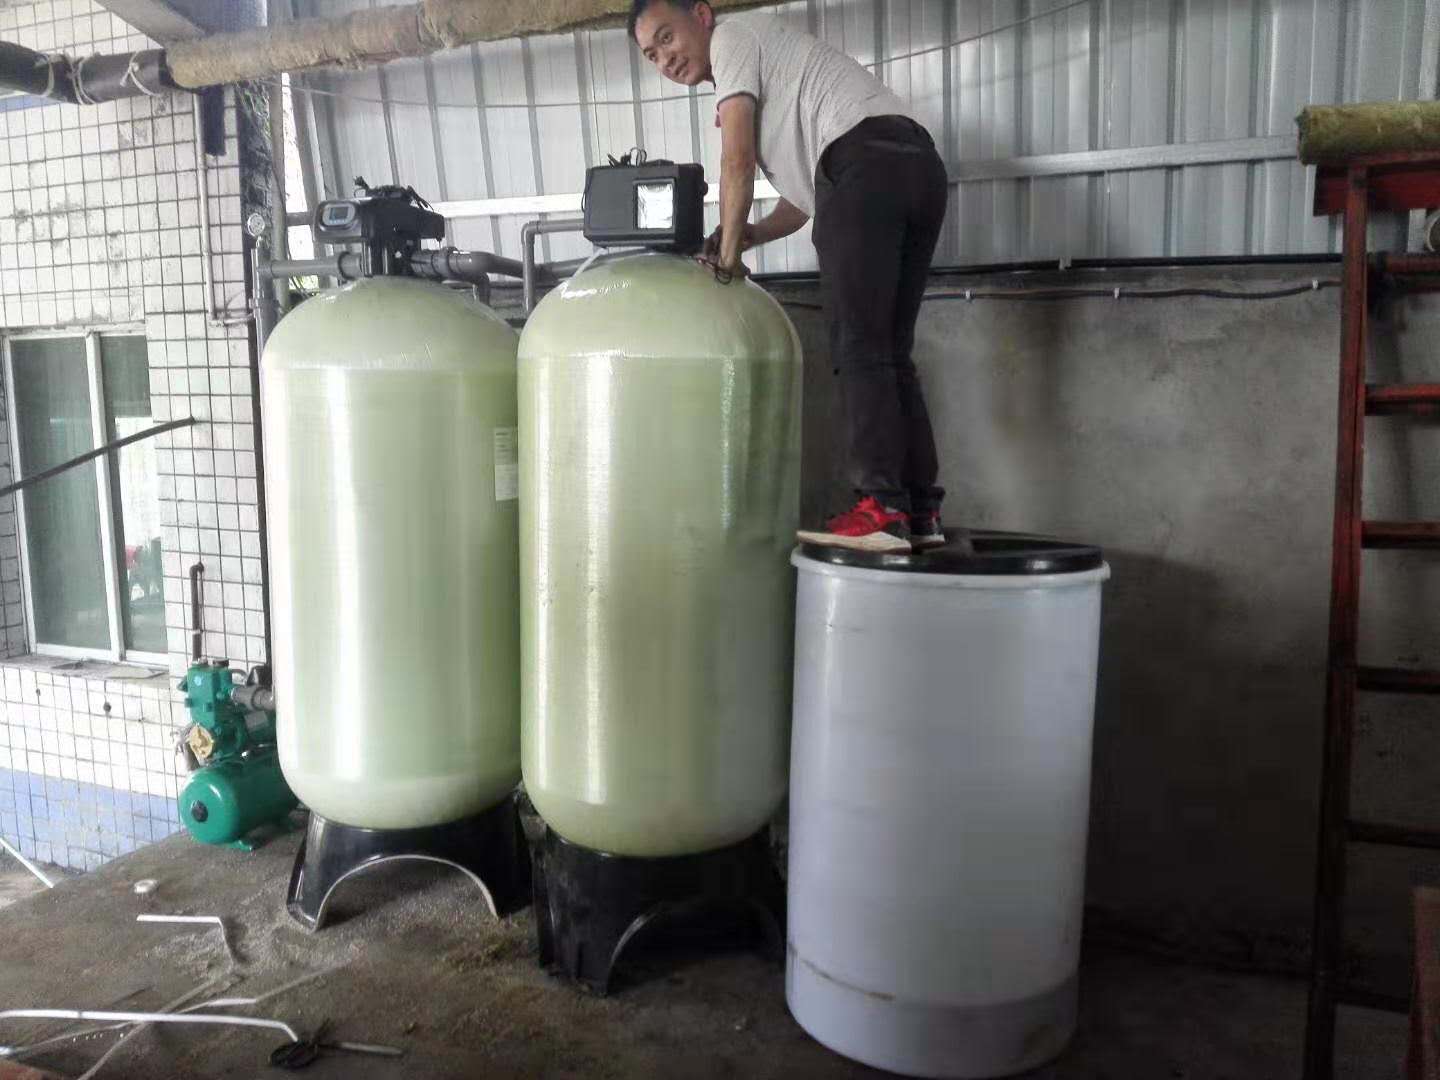 遵义茅台镇红土地酒坊锅炉用水过滤+软化水设备安装完毕